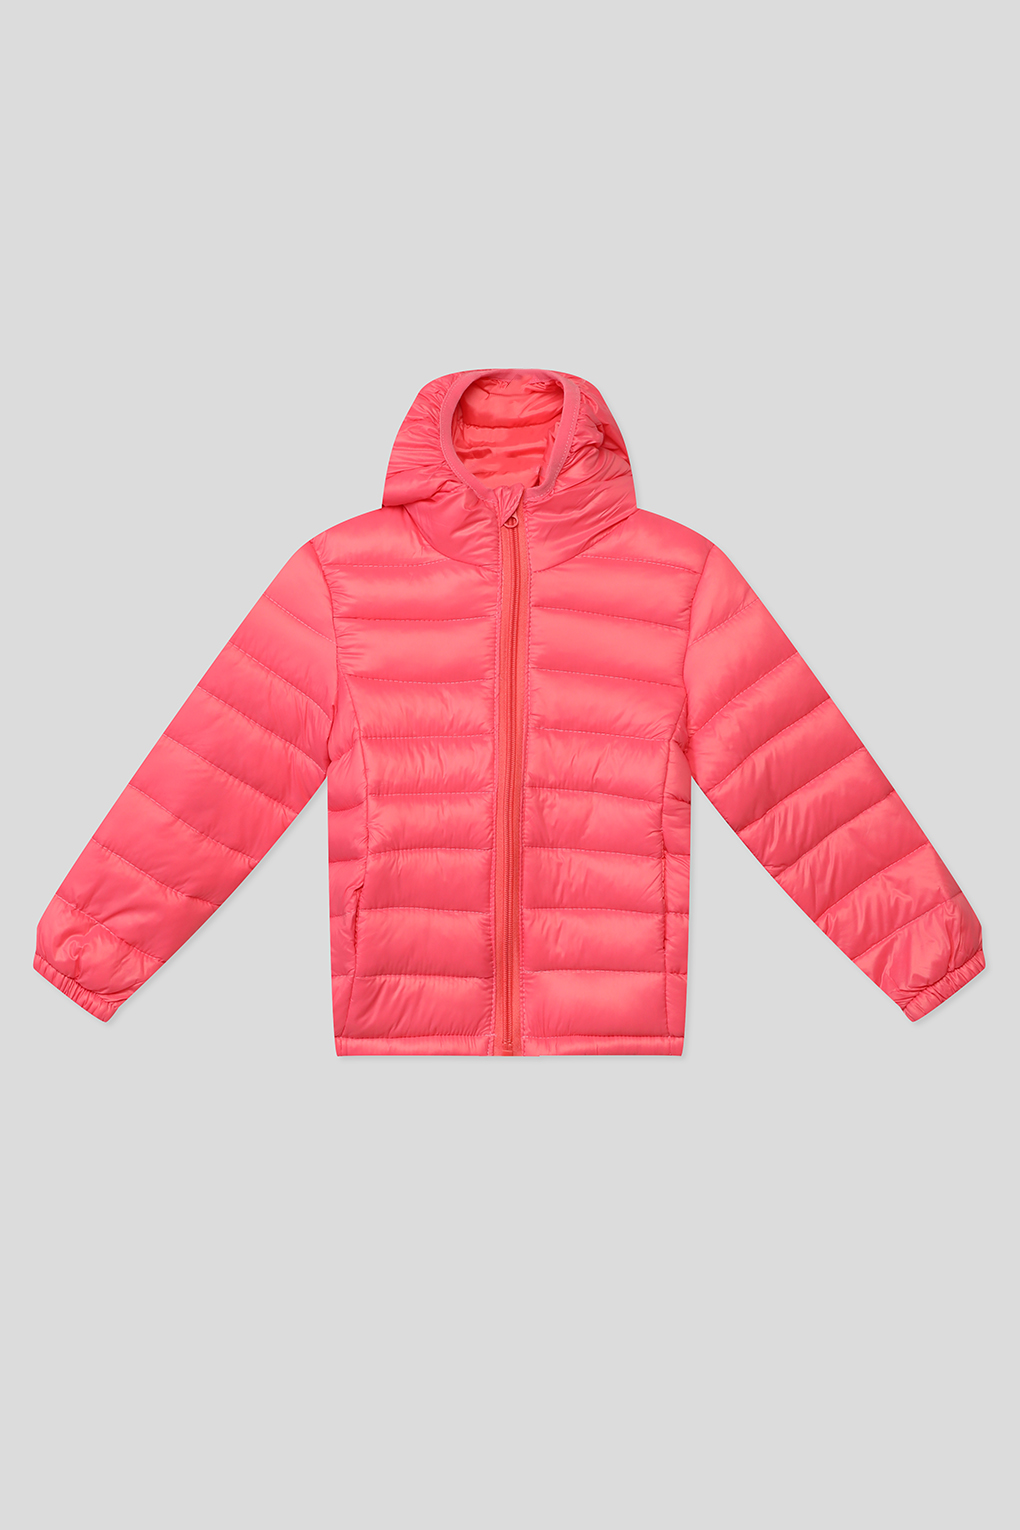 Куртка детская GIOCO G23049253-007 розовый, 164